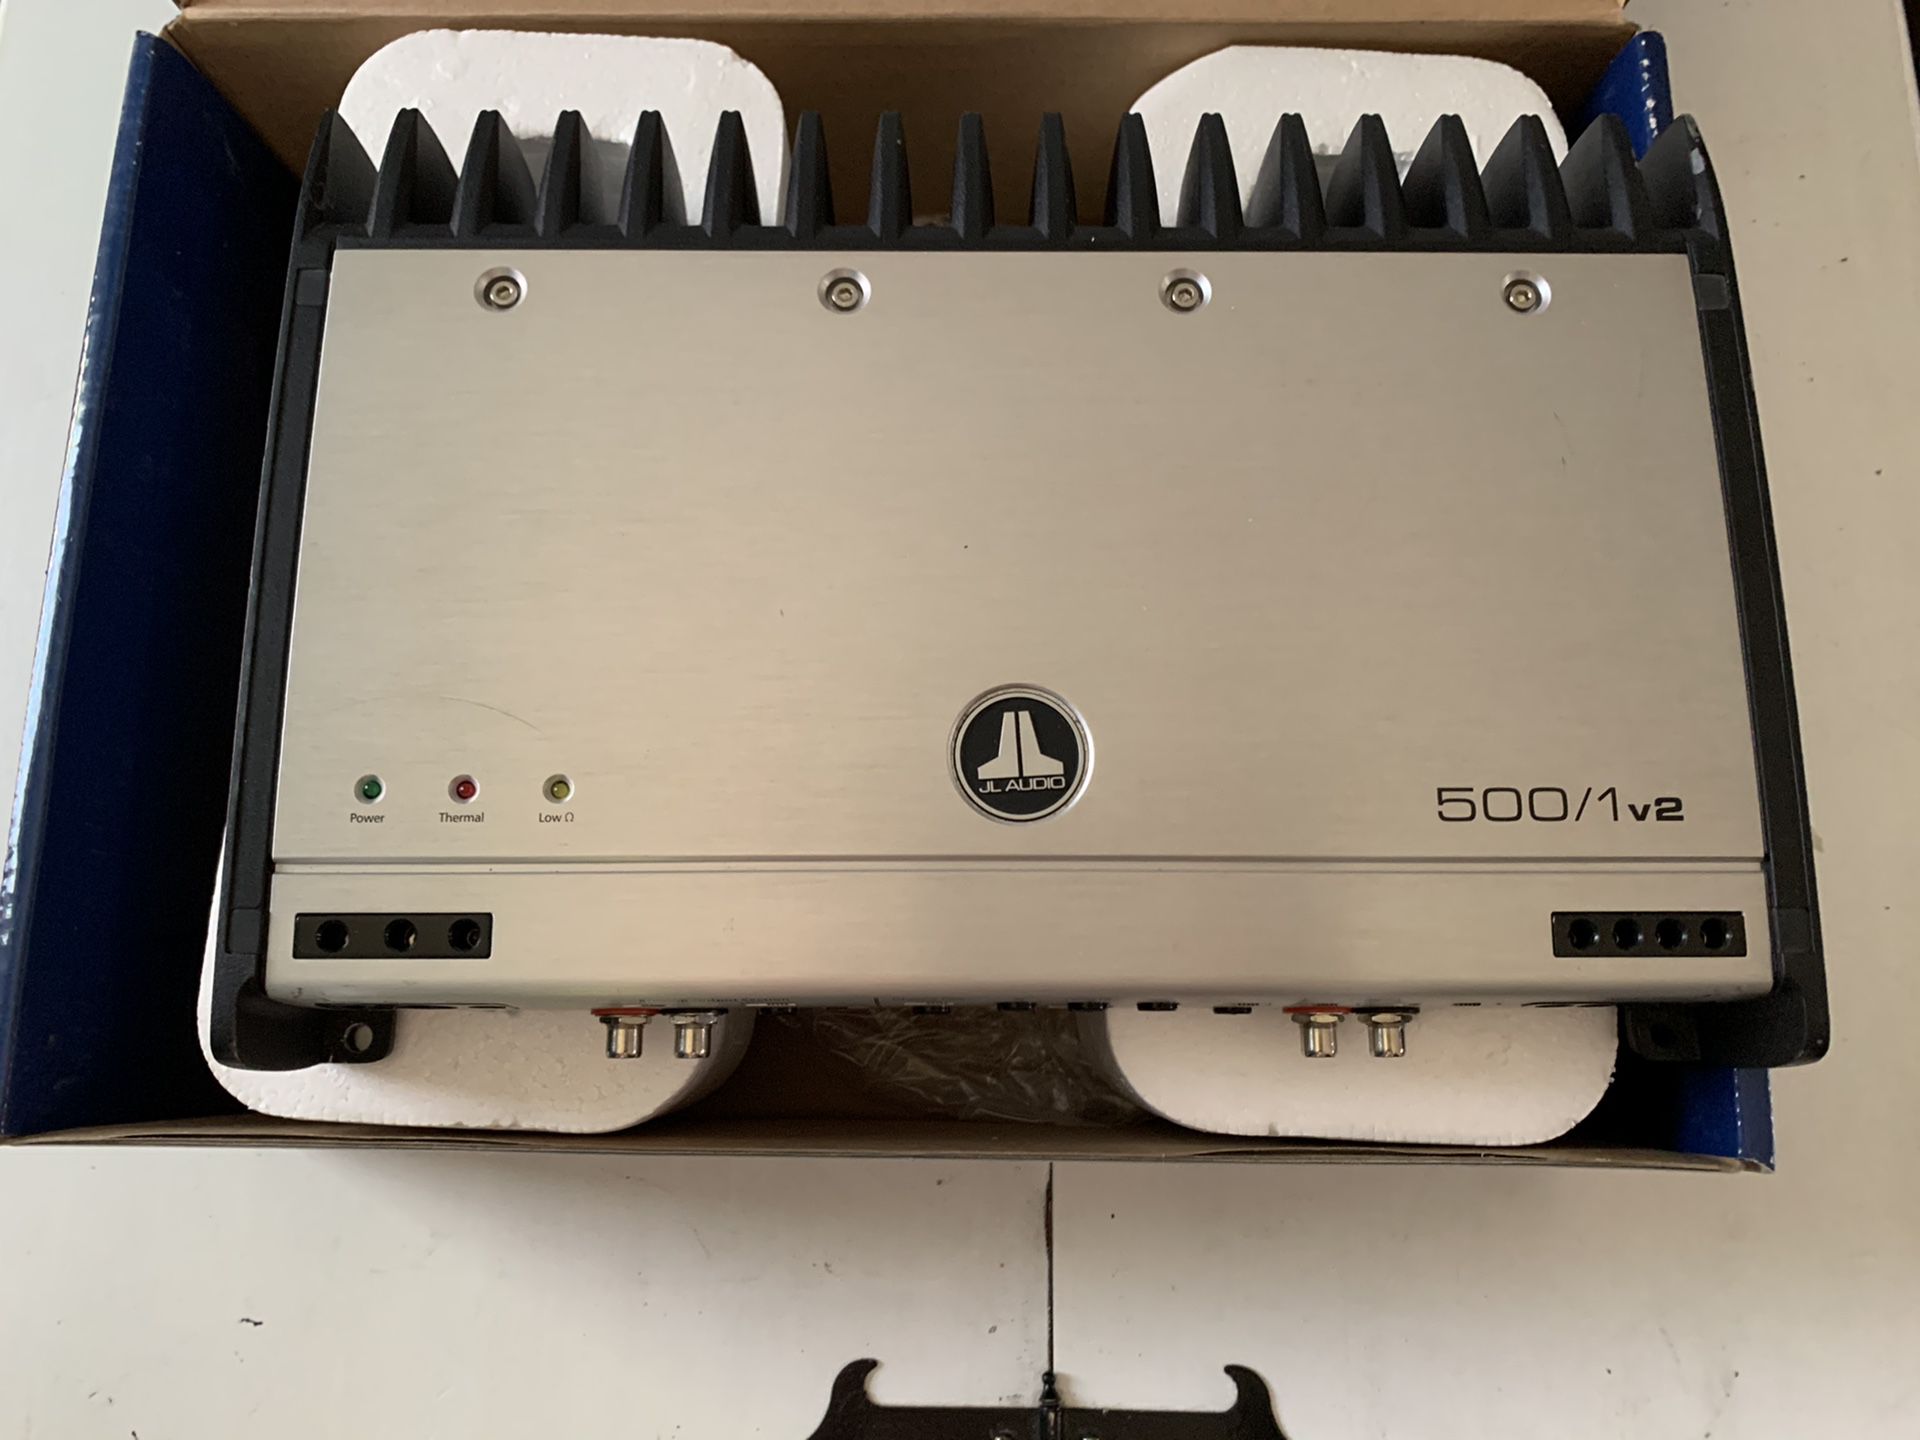 JL Audio 500/1v2 Subwoofer monoblock amplifier